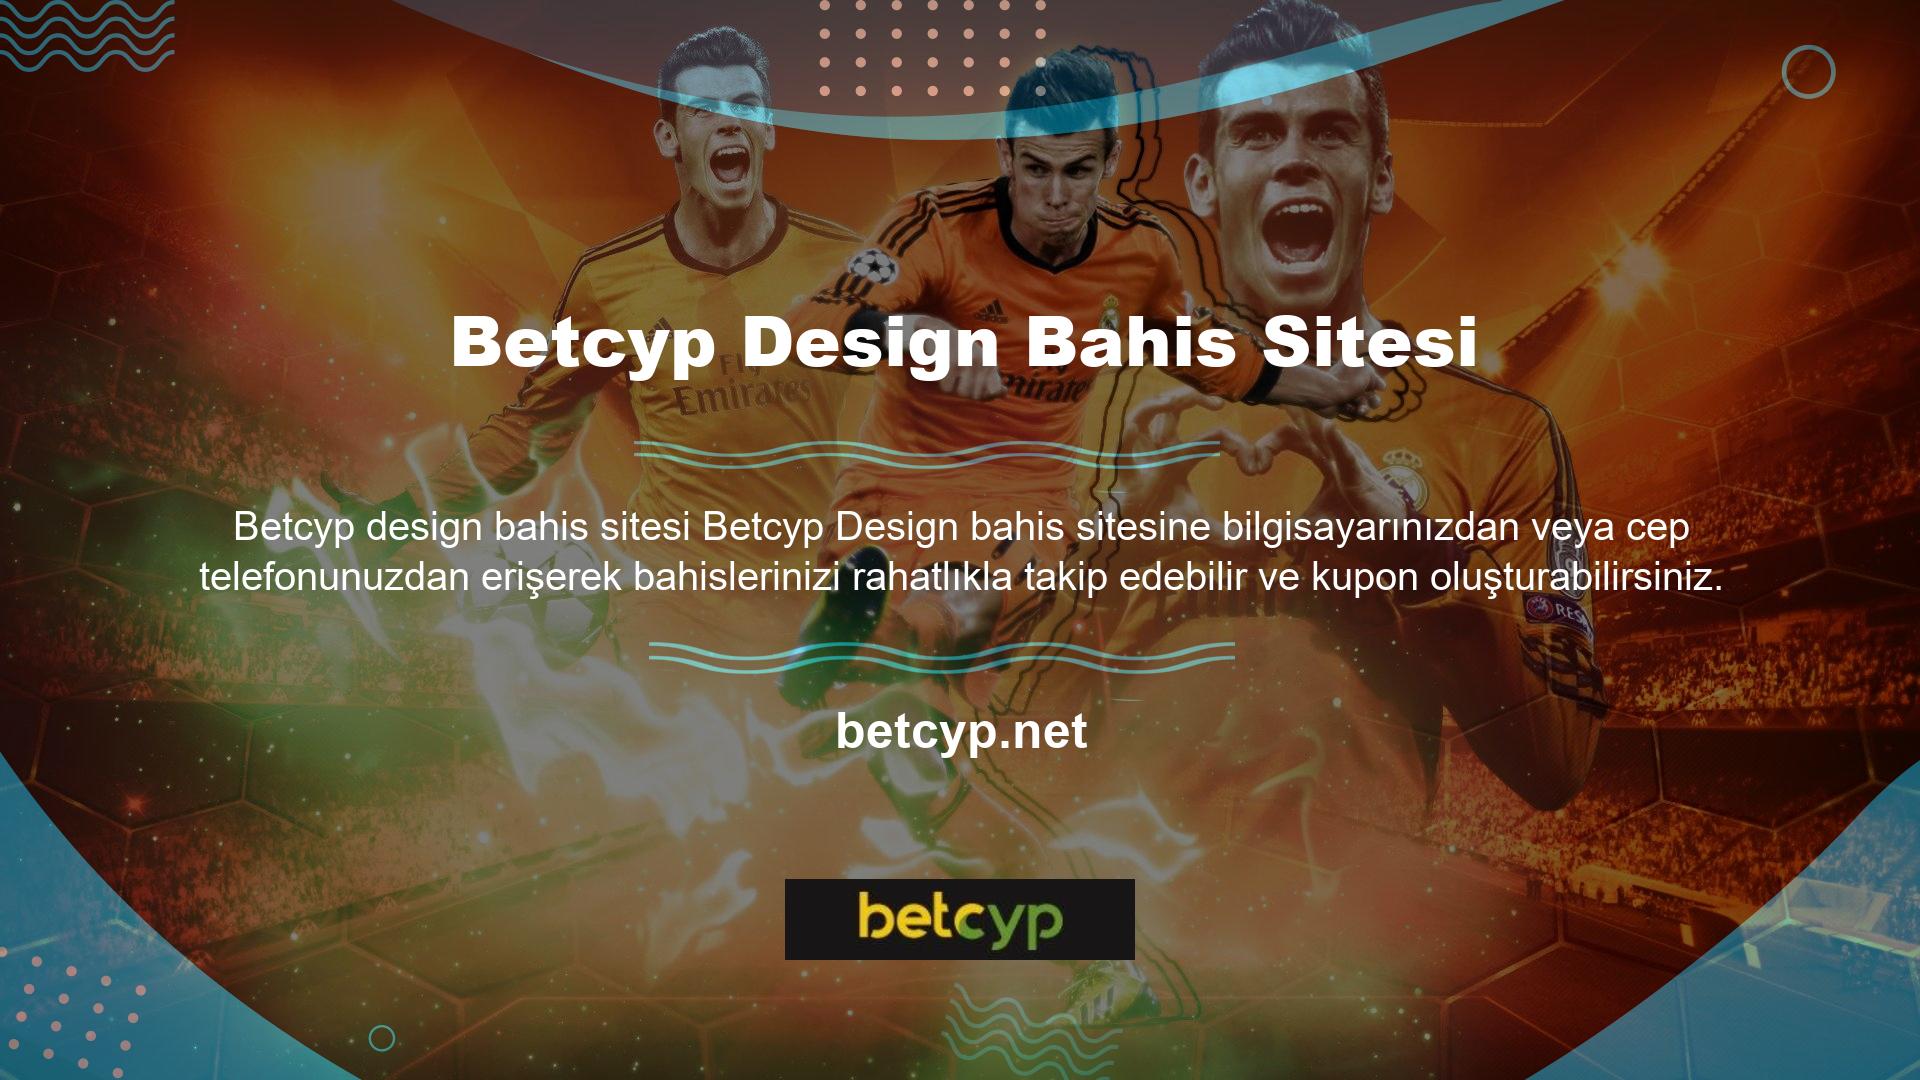 Betcyp online casino sitesi iyi tasarlanmış ve kullanımı kolaydır, bu yüzden çok popülerdir